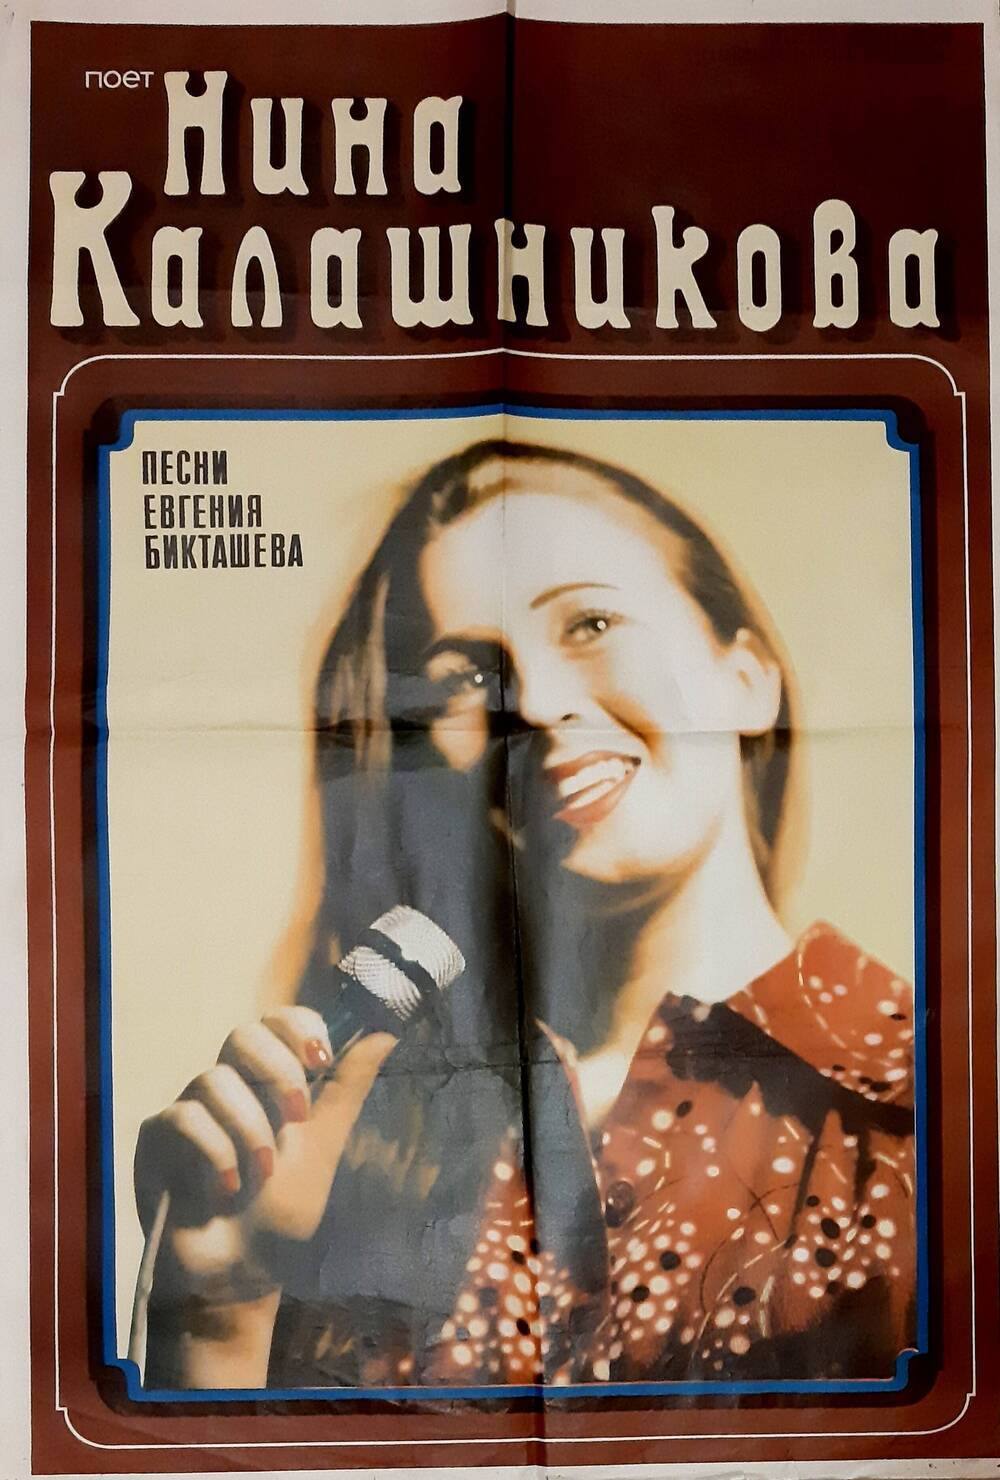 ПлакатПоёт Нина Калашникова песни Евгения Бикташева.